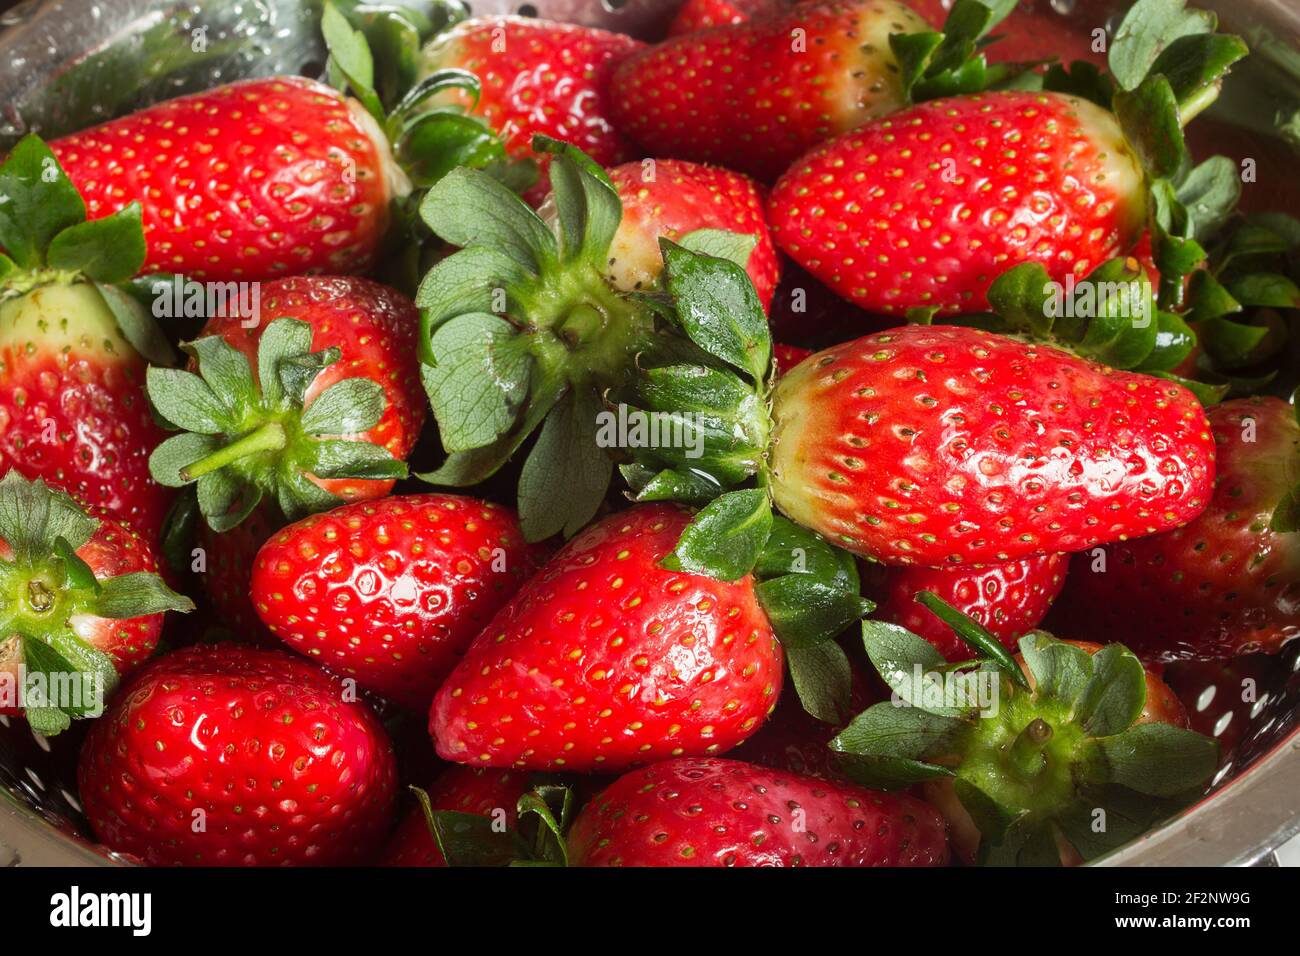 Nahaufnahme von vielen frisch gewaschenen Erdbeeren in einem mikroperforierten Metallsieb. Waschen Sie Obst und gesunde Ernährung. Stockfoto